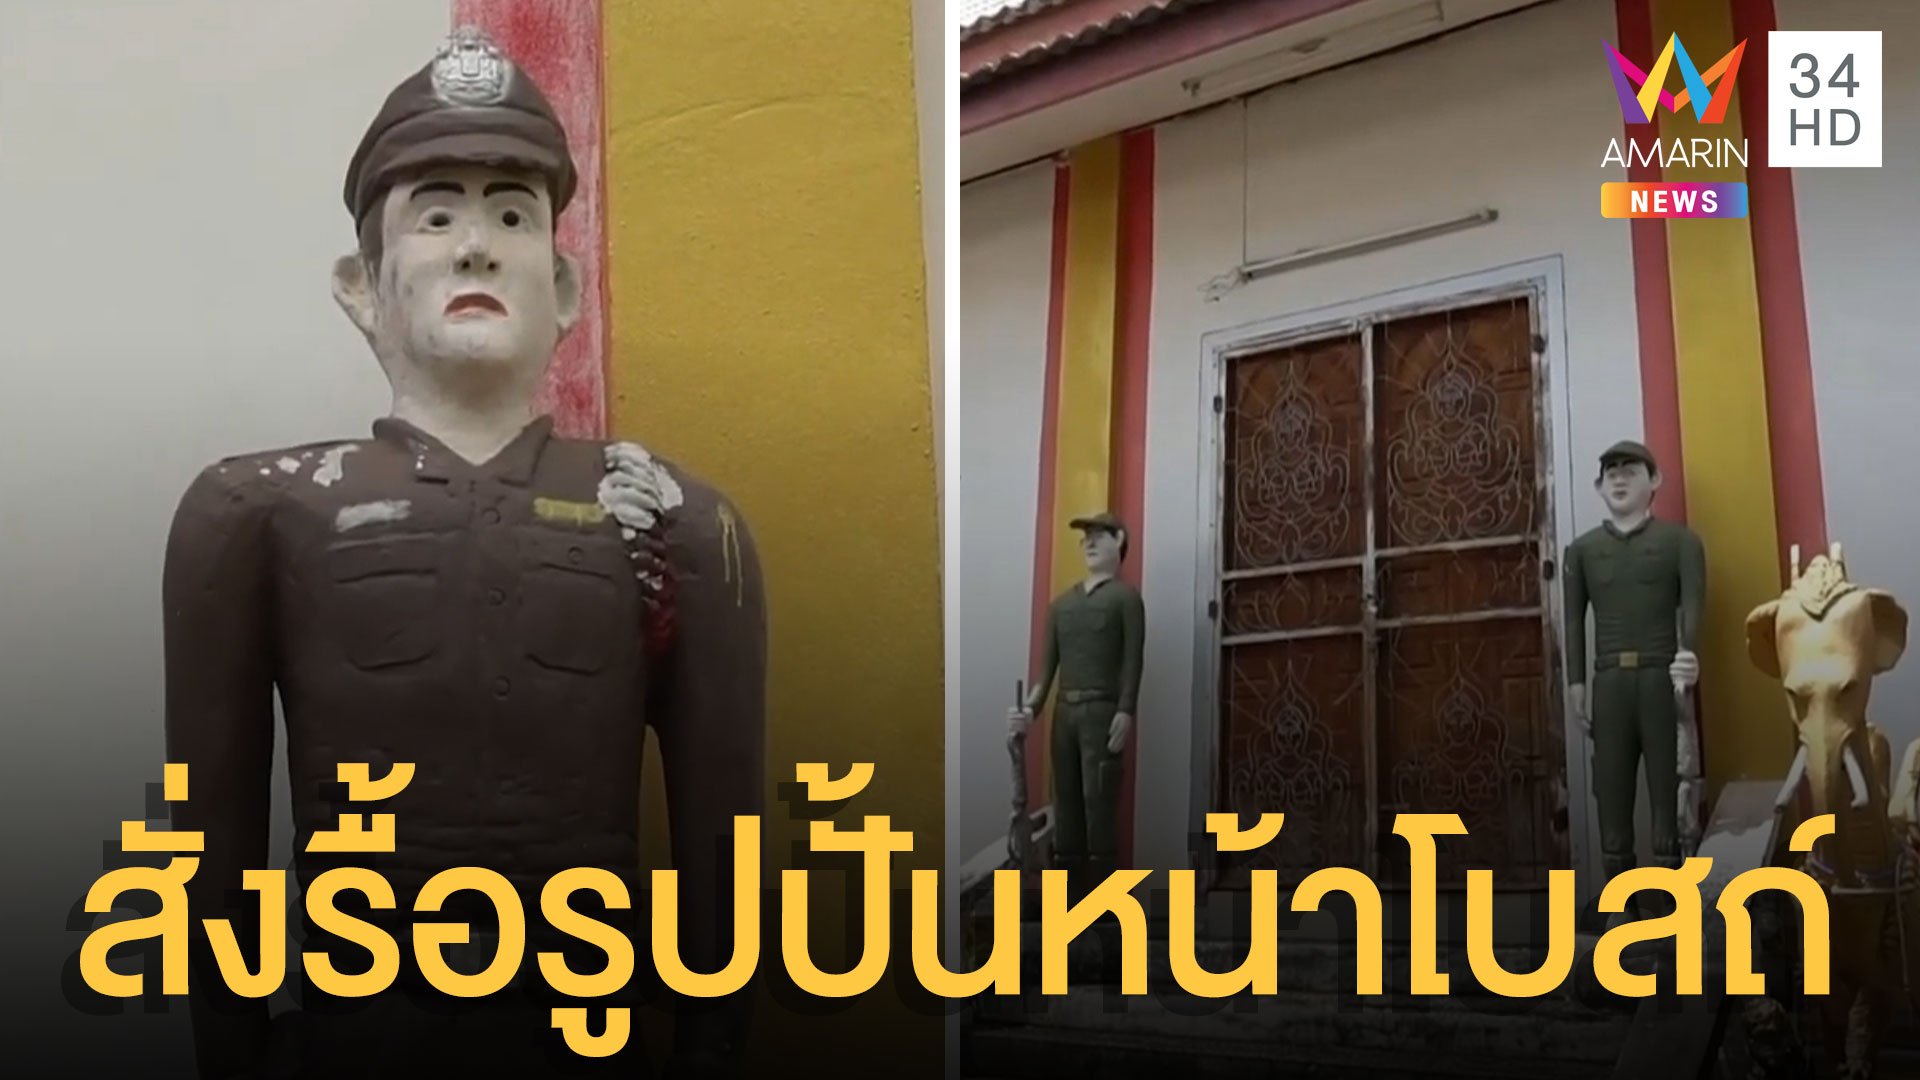 รูปปั้น ตำรวจ ทหาร ยืนเฝ้าโบสถ์ แต่สั่งรื้อแล้ว | ข่าวอรุณอมรินทร์ | 24 ก.ย. 64 | AMARIN TVHD34